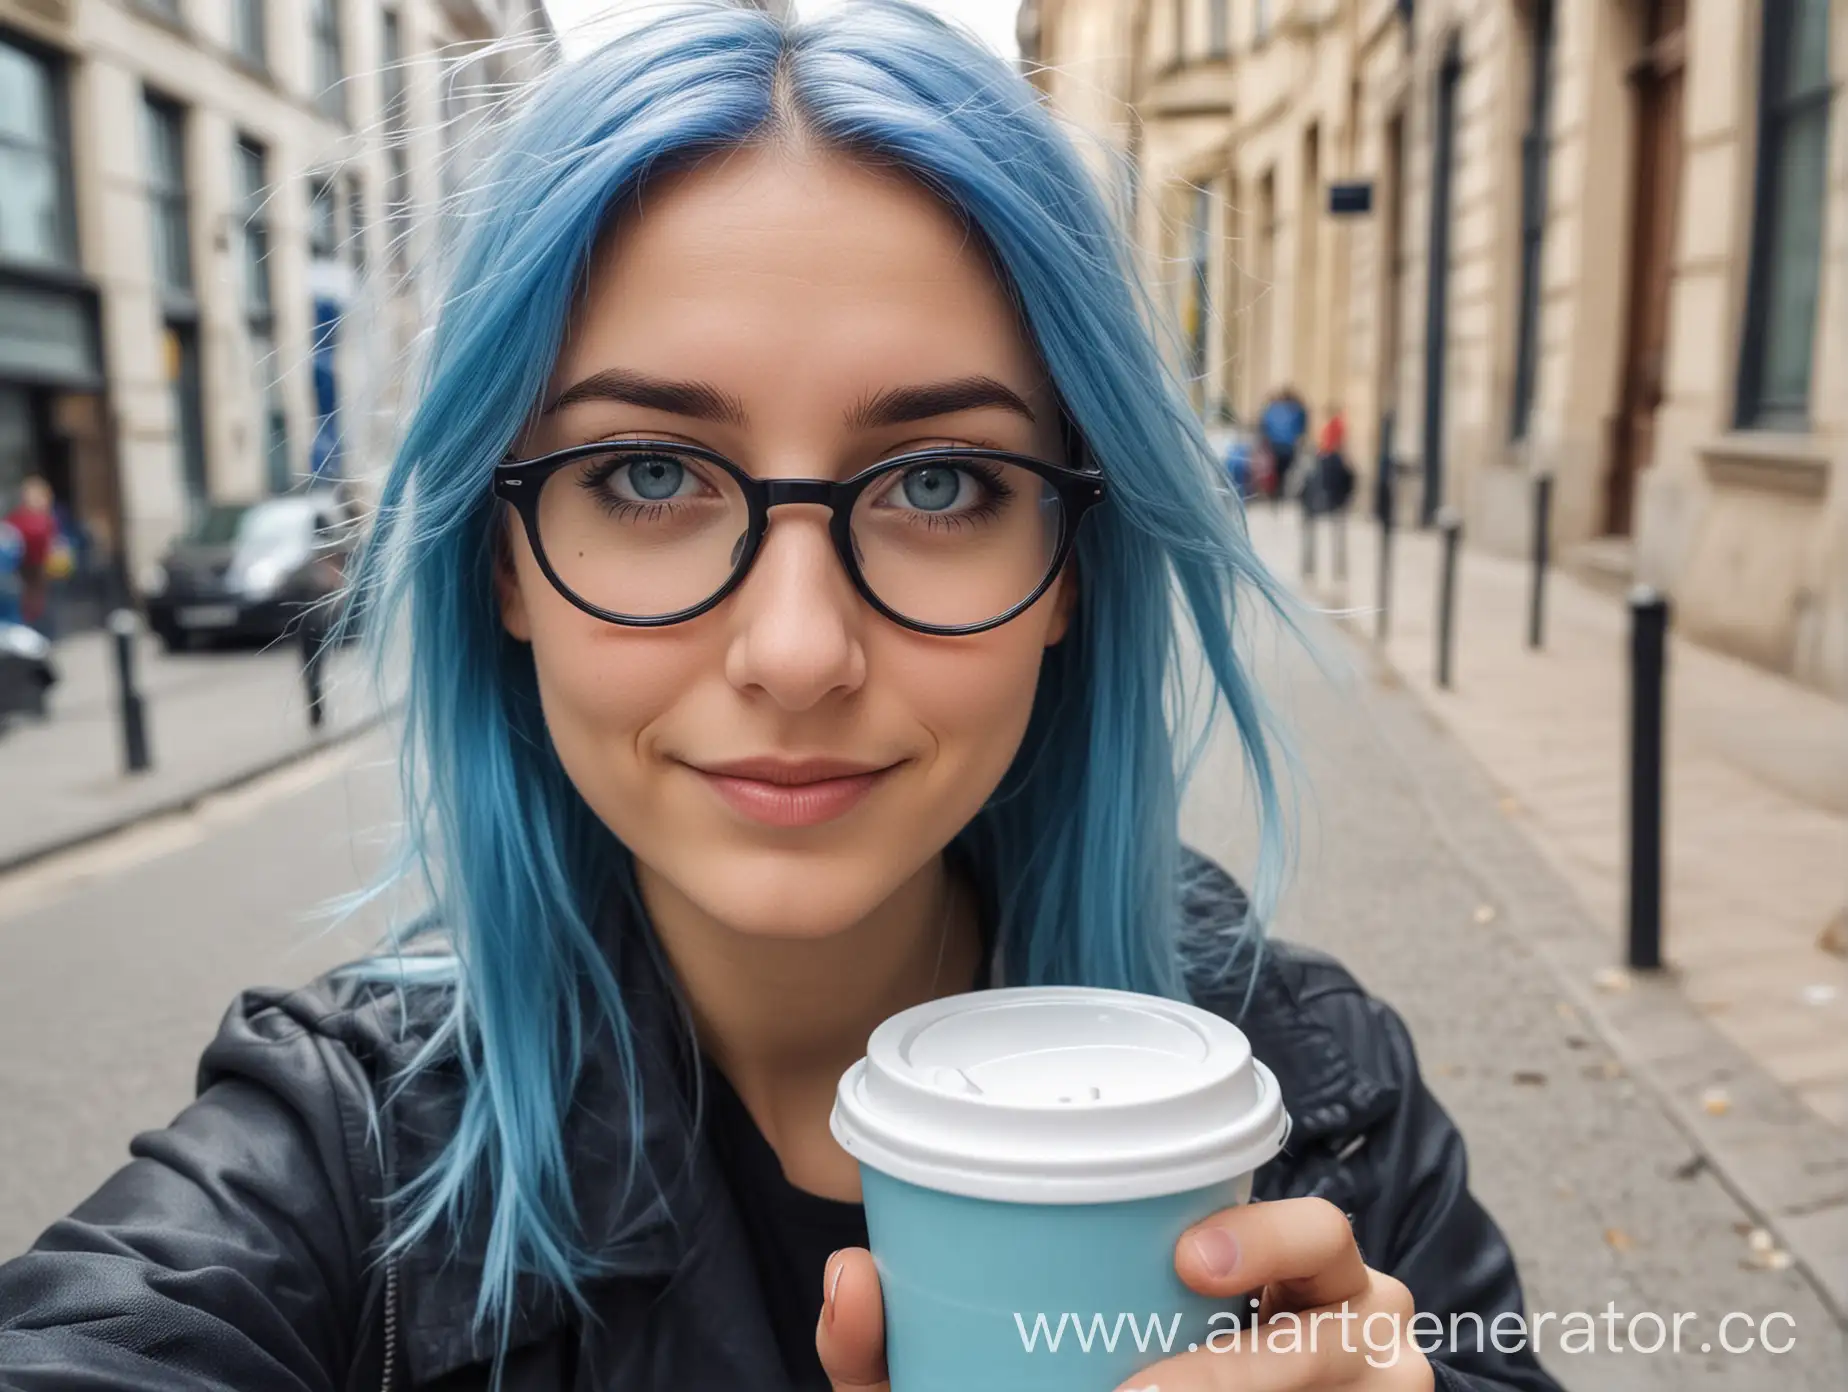 Студентка в городе со стаканчиком кофе. У неё голубые волосы средней длины, голубые глаза за стёклами очков. Селфи, она в 1,5 метрах от камеры, серьёзна. Фото немного смазано